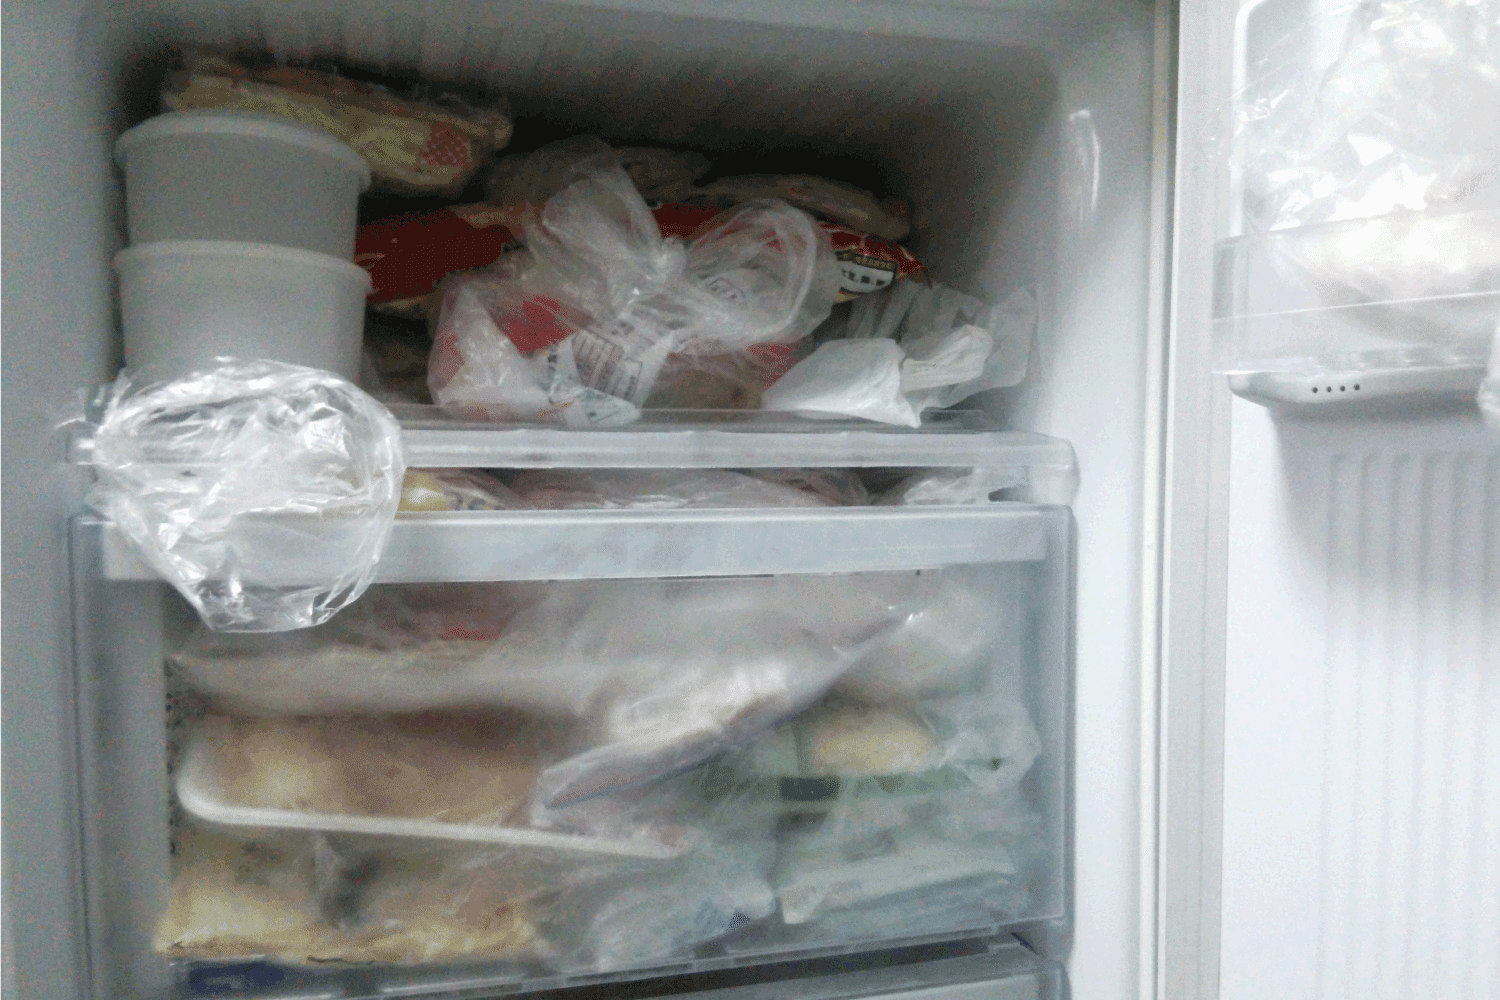 door open of fully stocked freezer